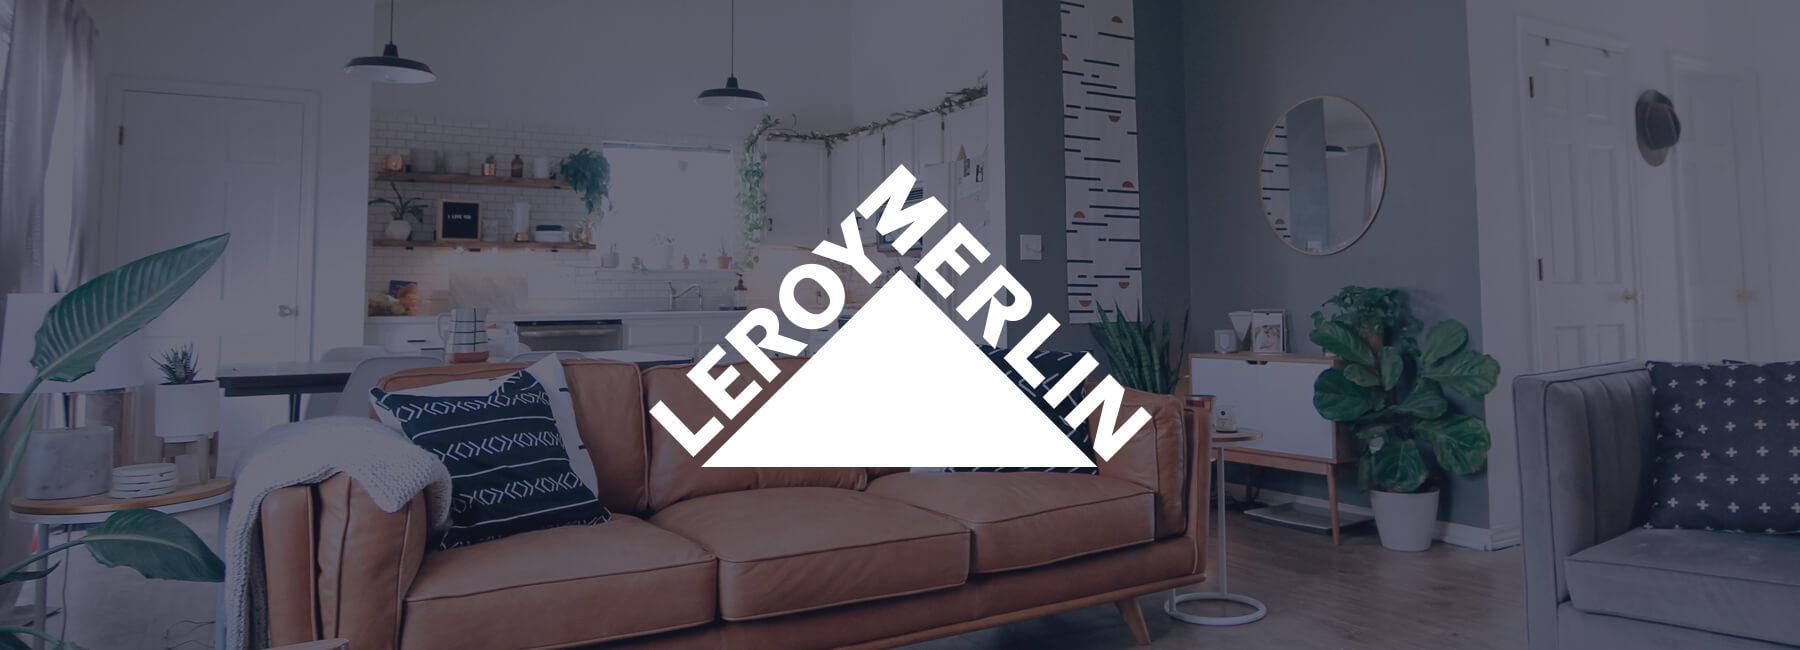 Leroy Merlin boost conversie met Mopinion feedback